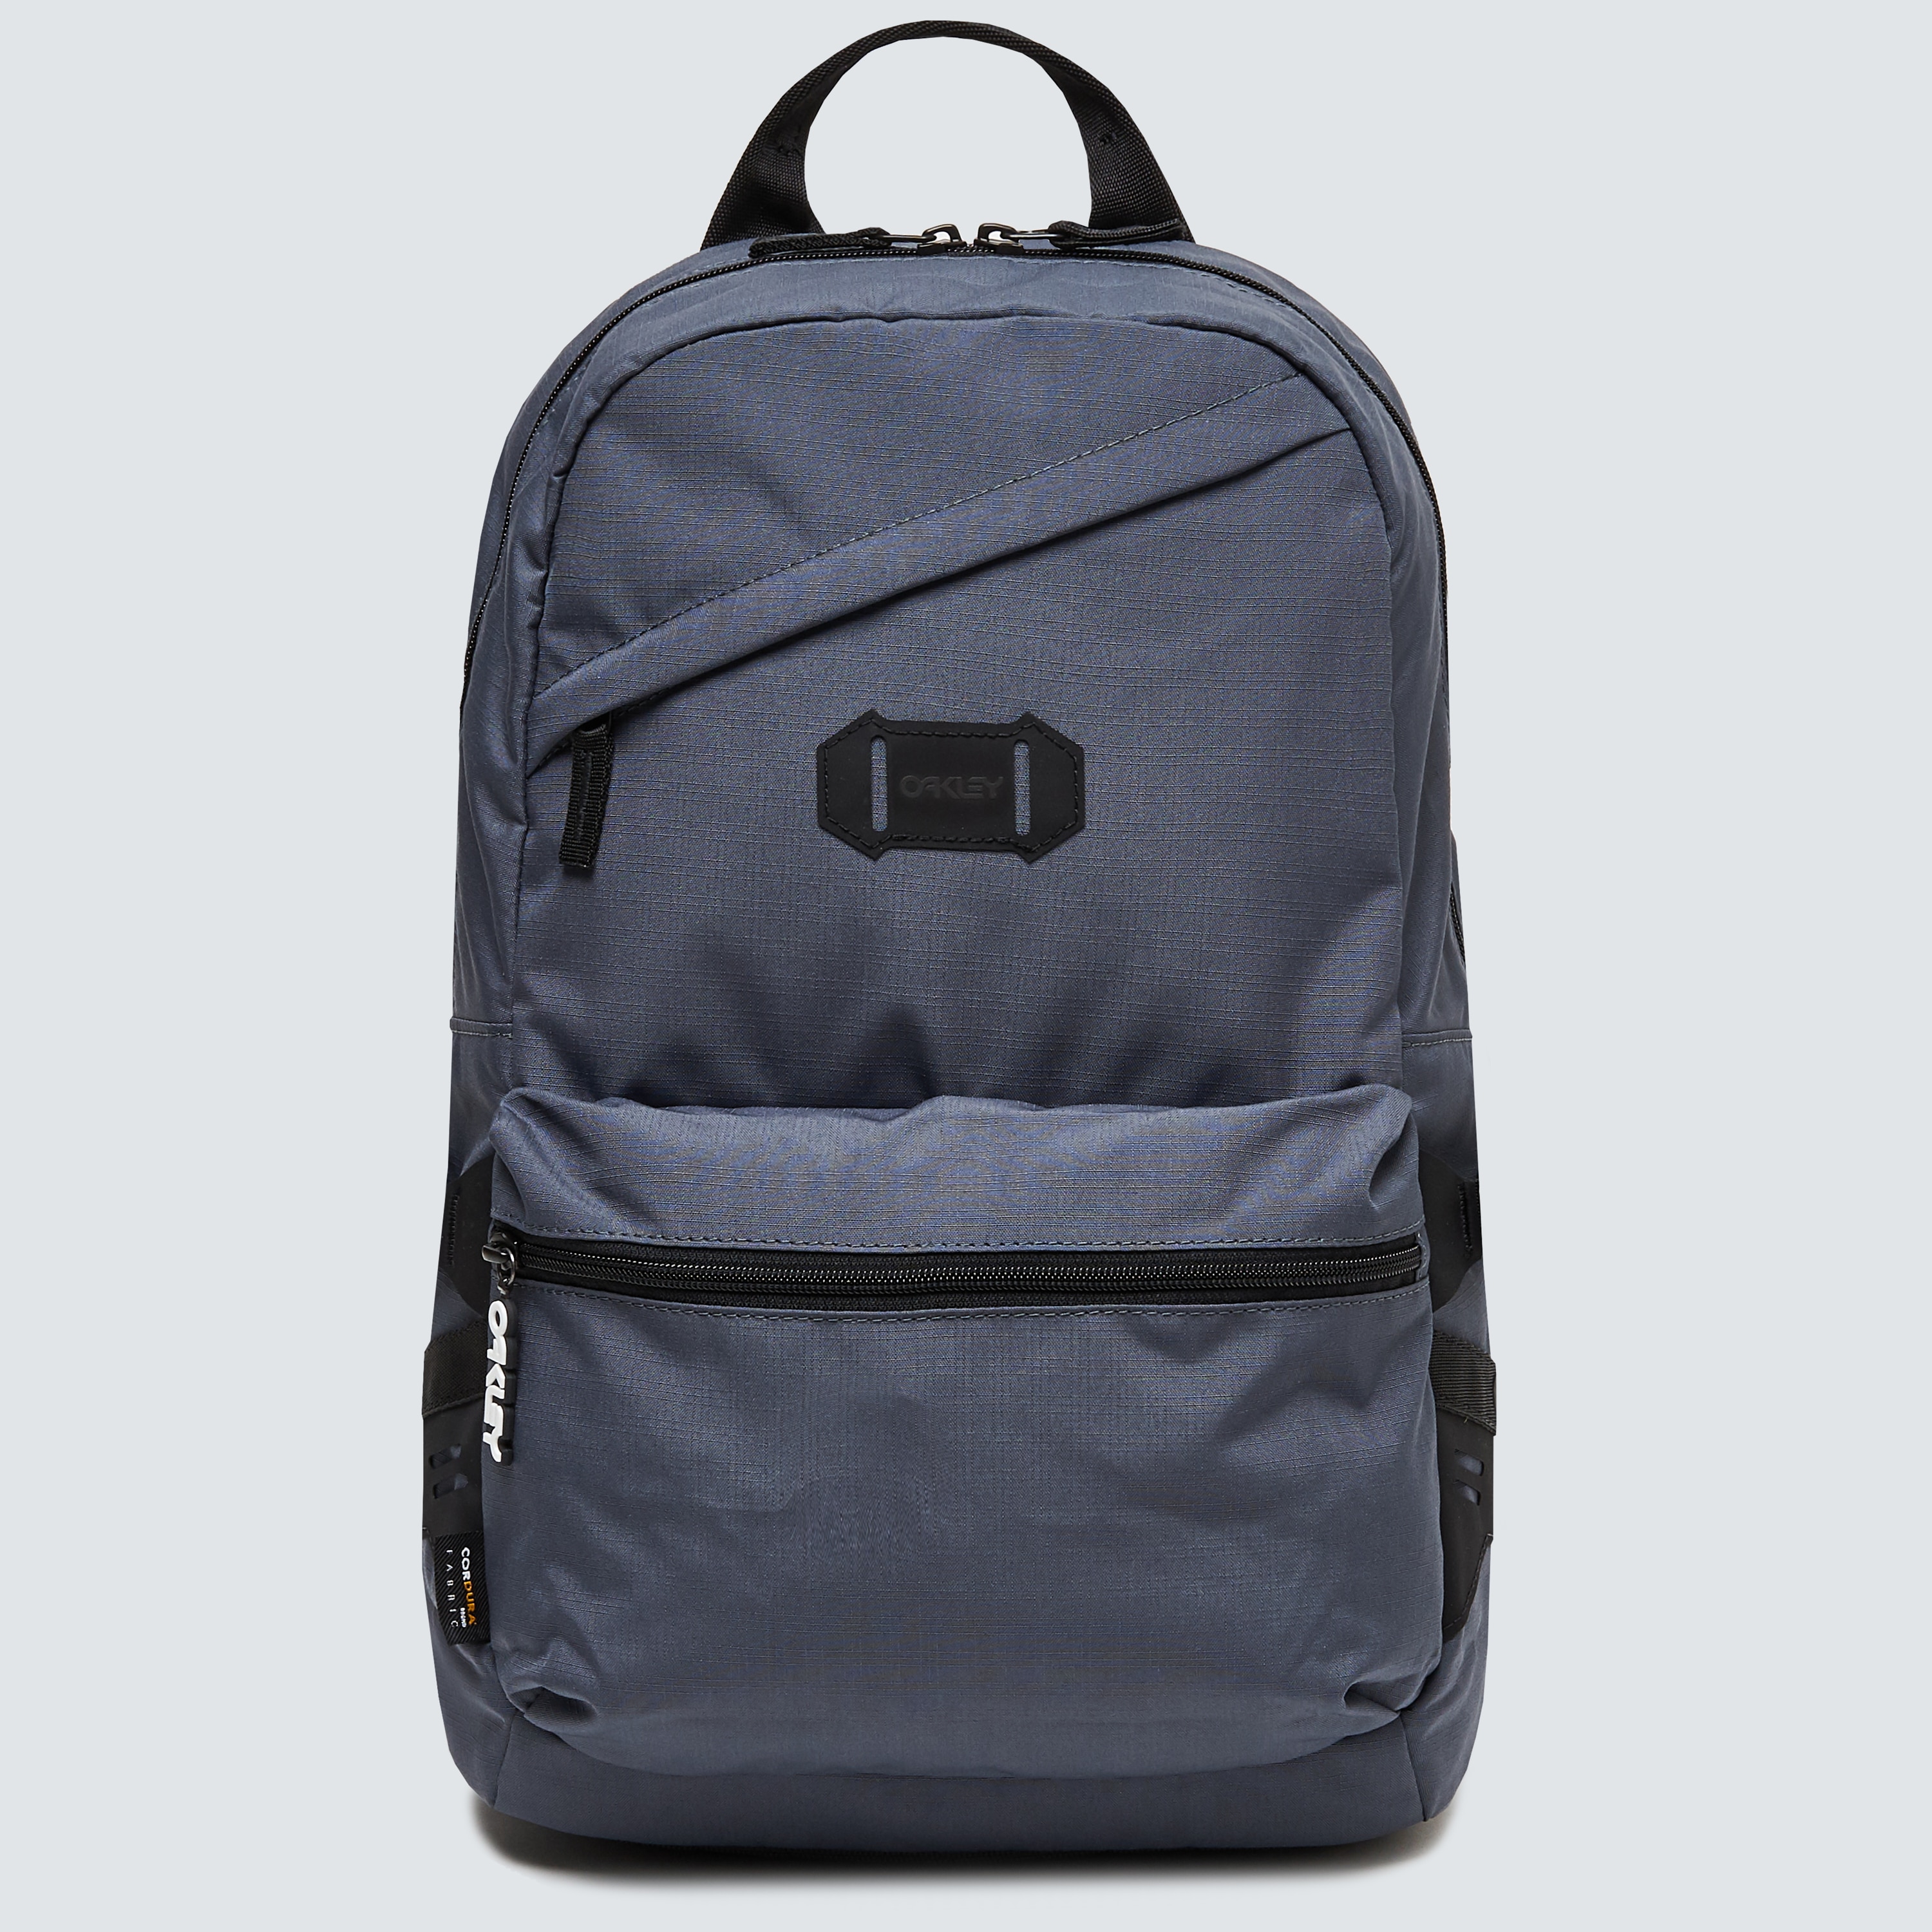 Oakley Street Backpack 2.0 - Uniform 